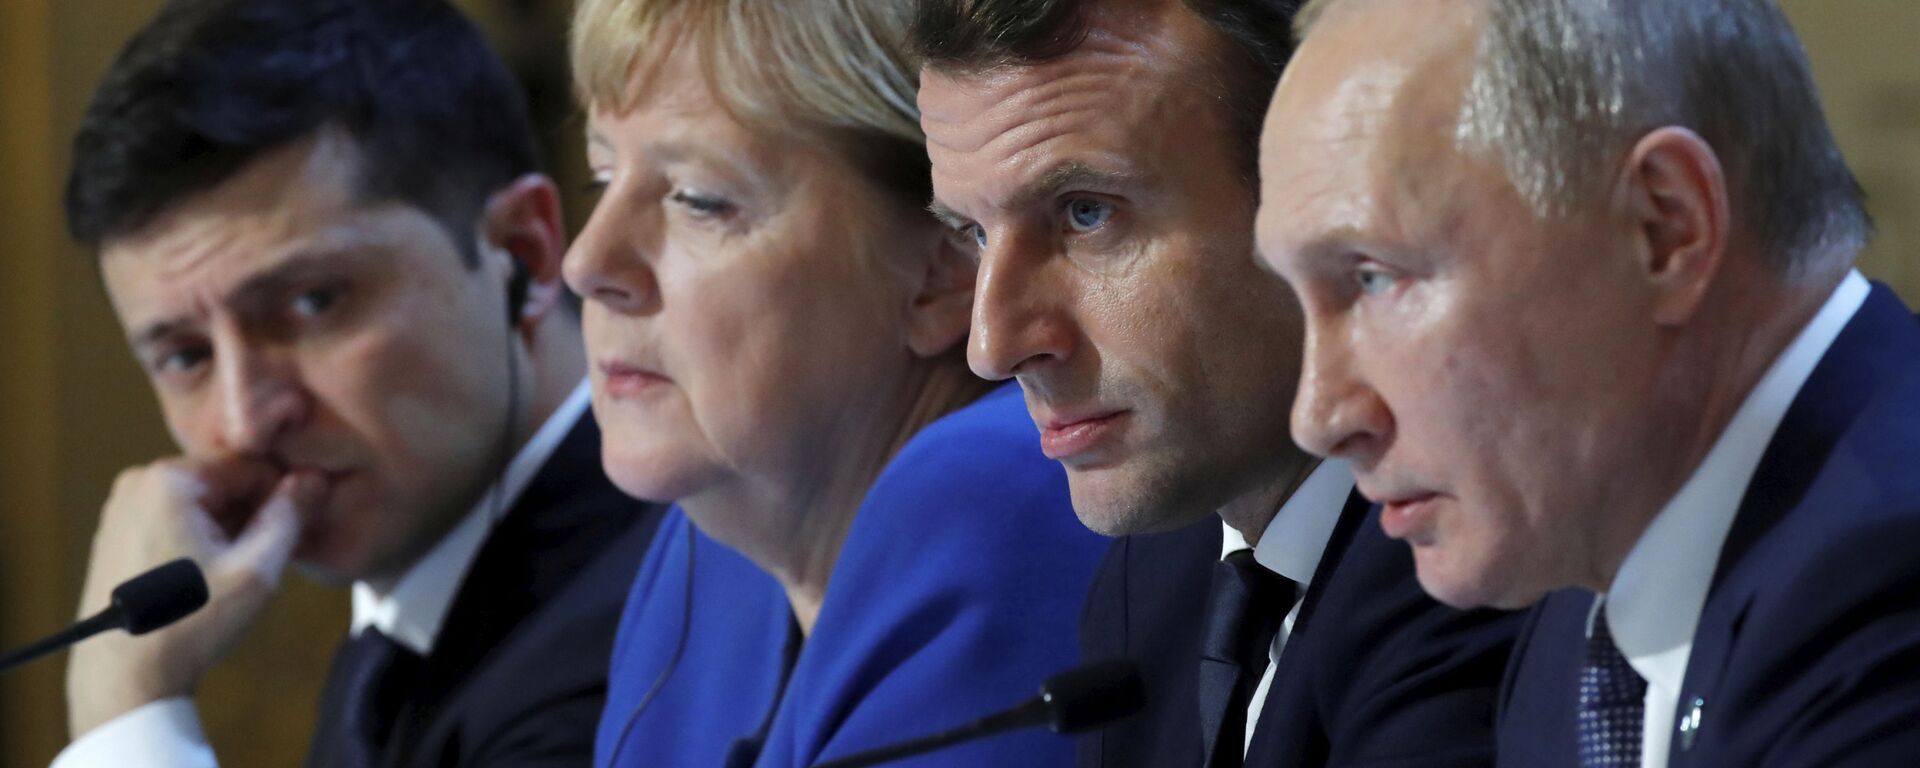 Los líderes del Cuarteto de Normandía: Volodímir Zelenski, Angela Merkel, Emmanuel Macron y Vladímir Putin - Sputnik Mundo, 1920, 11.11.2021